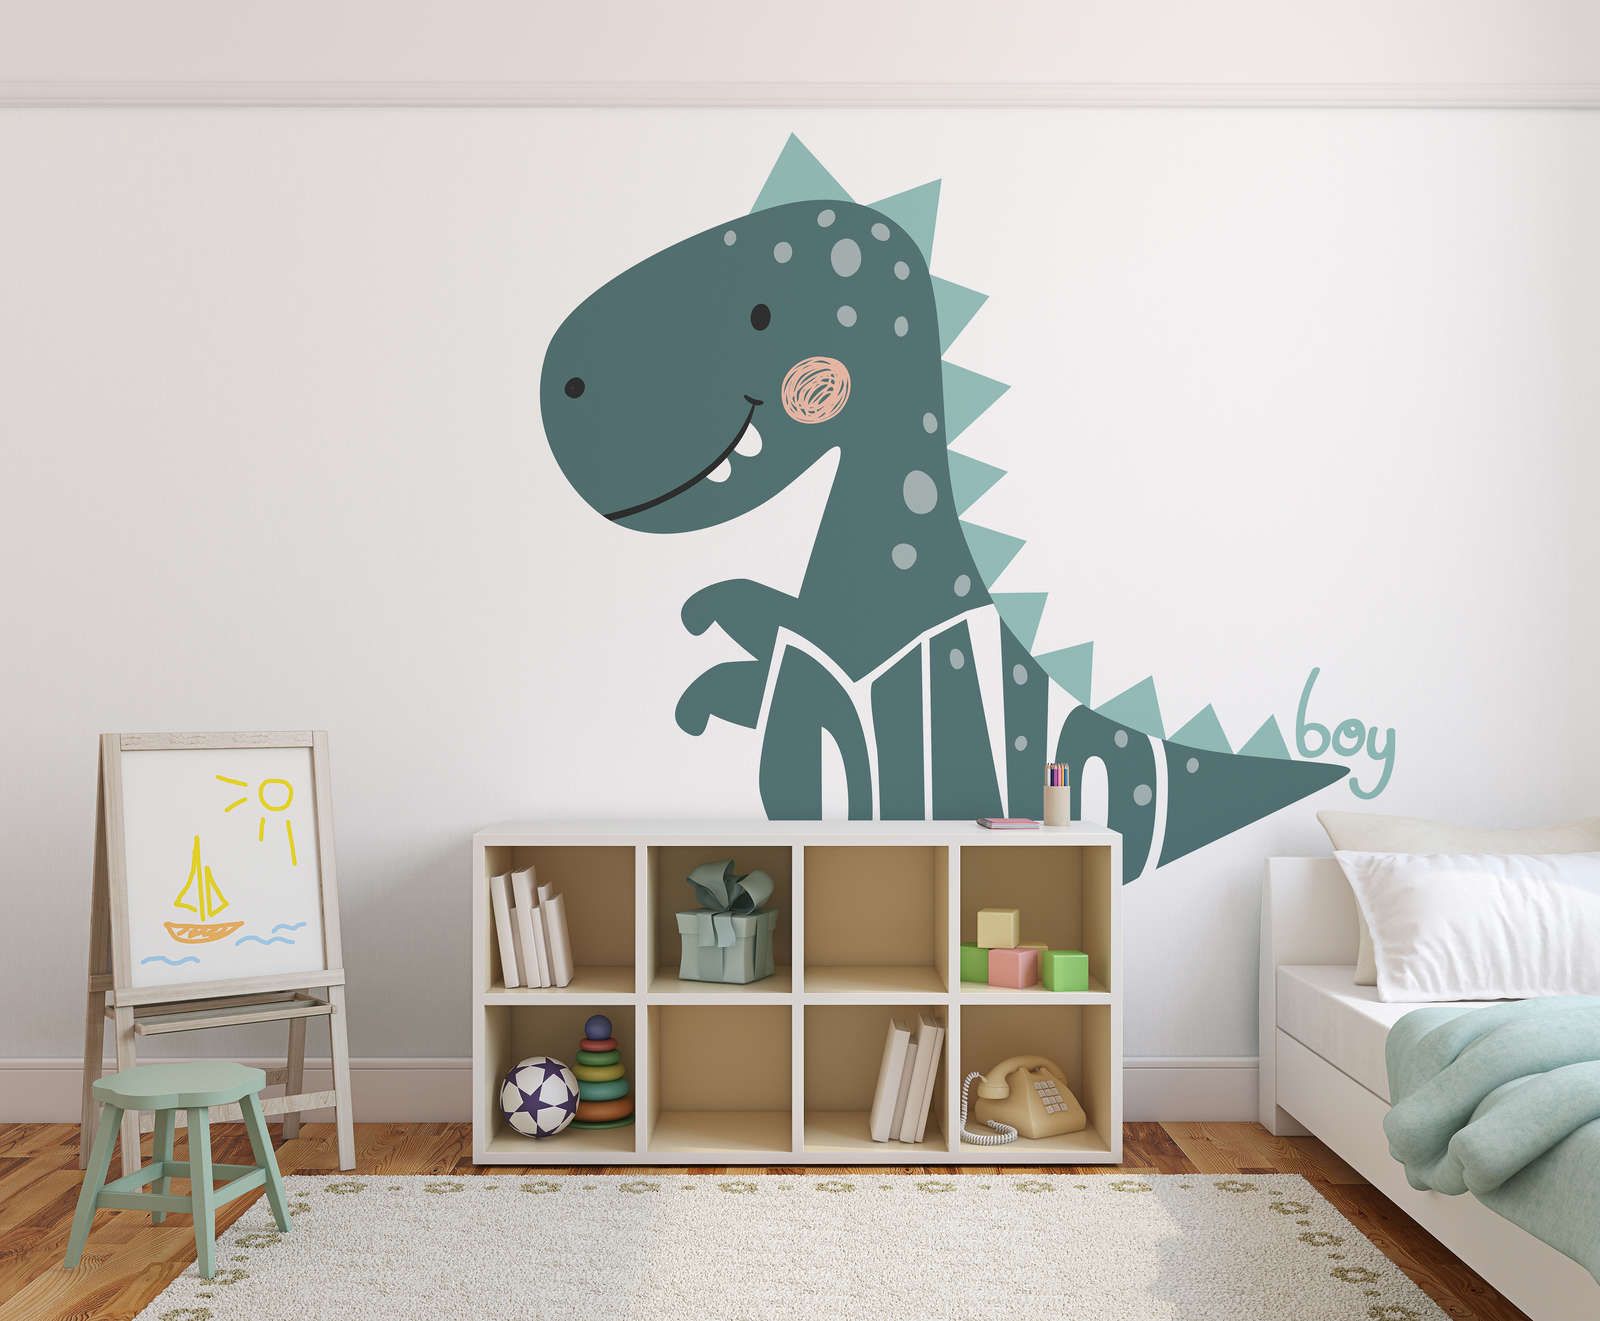             Kinderkamer muurschildering met dinosaurus - Glad & parelmoer fleece
        